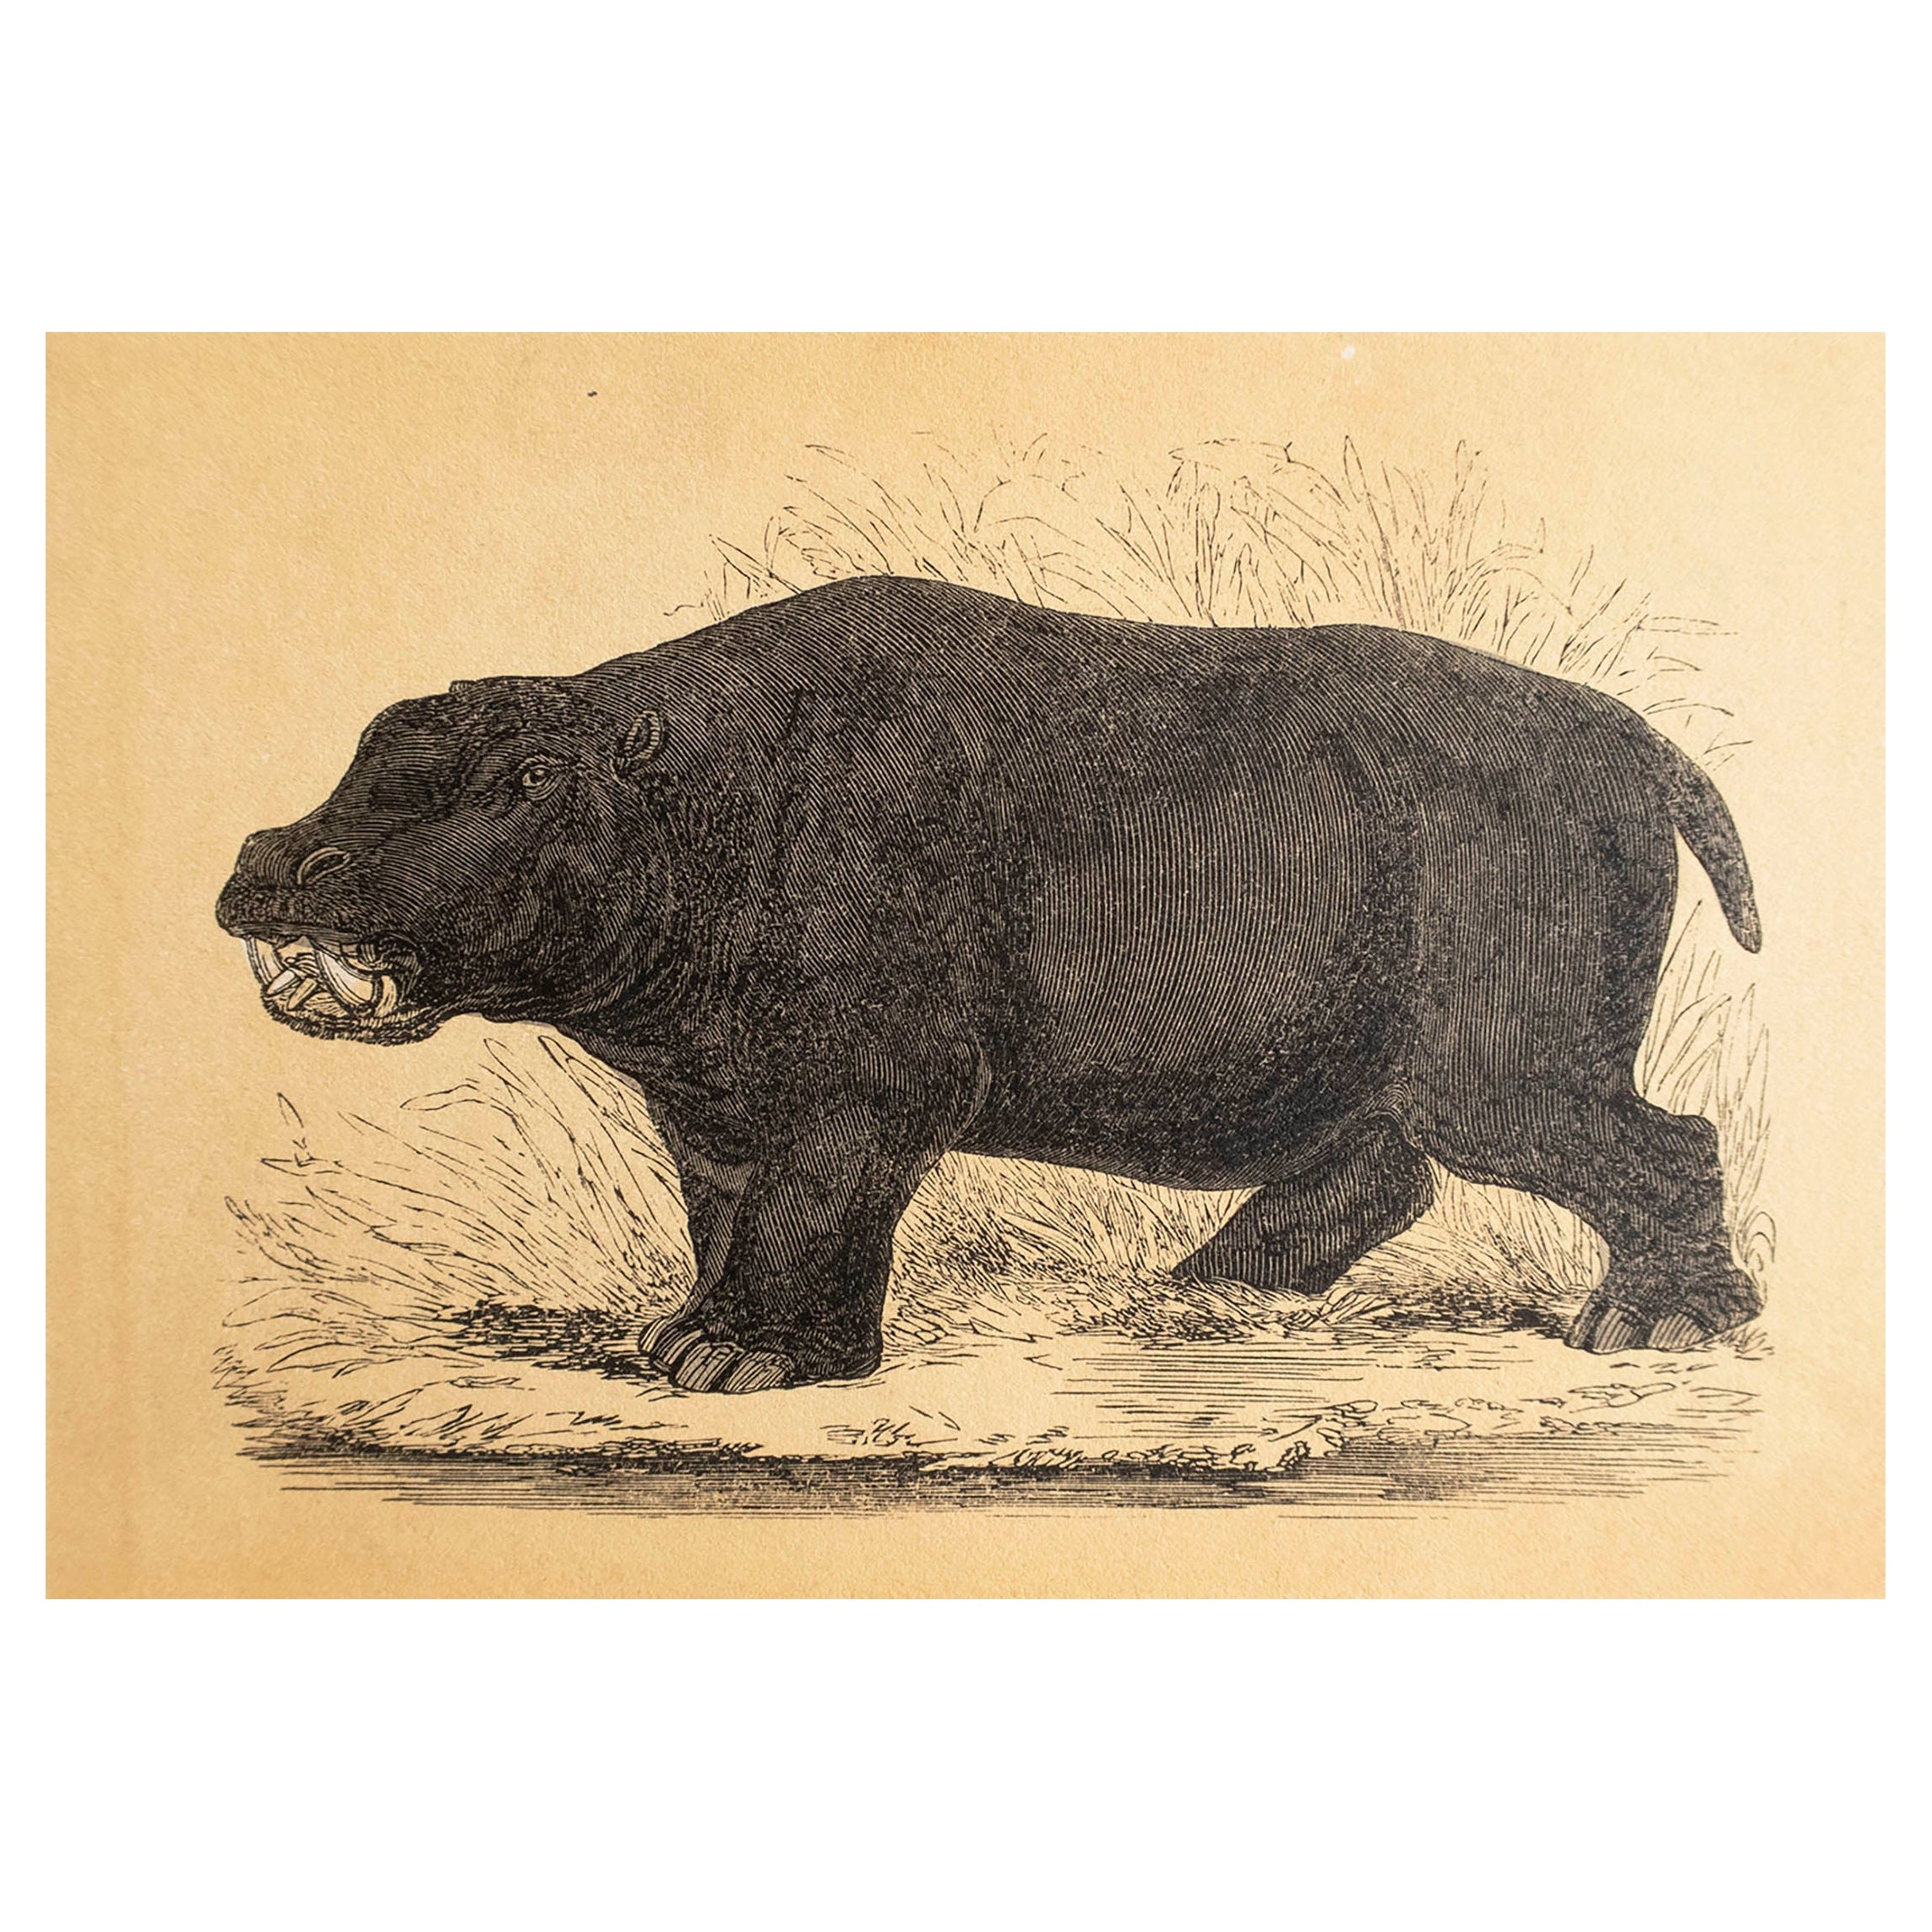  Grabado original antiguo de un hipopótamo, hacia 1850